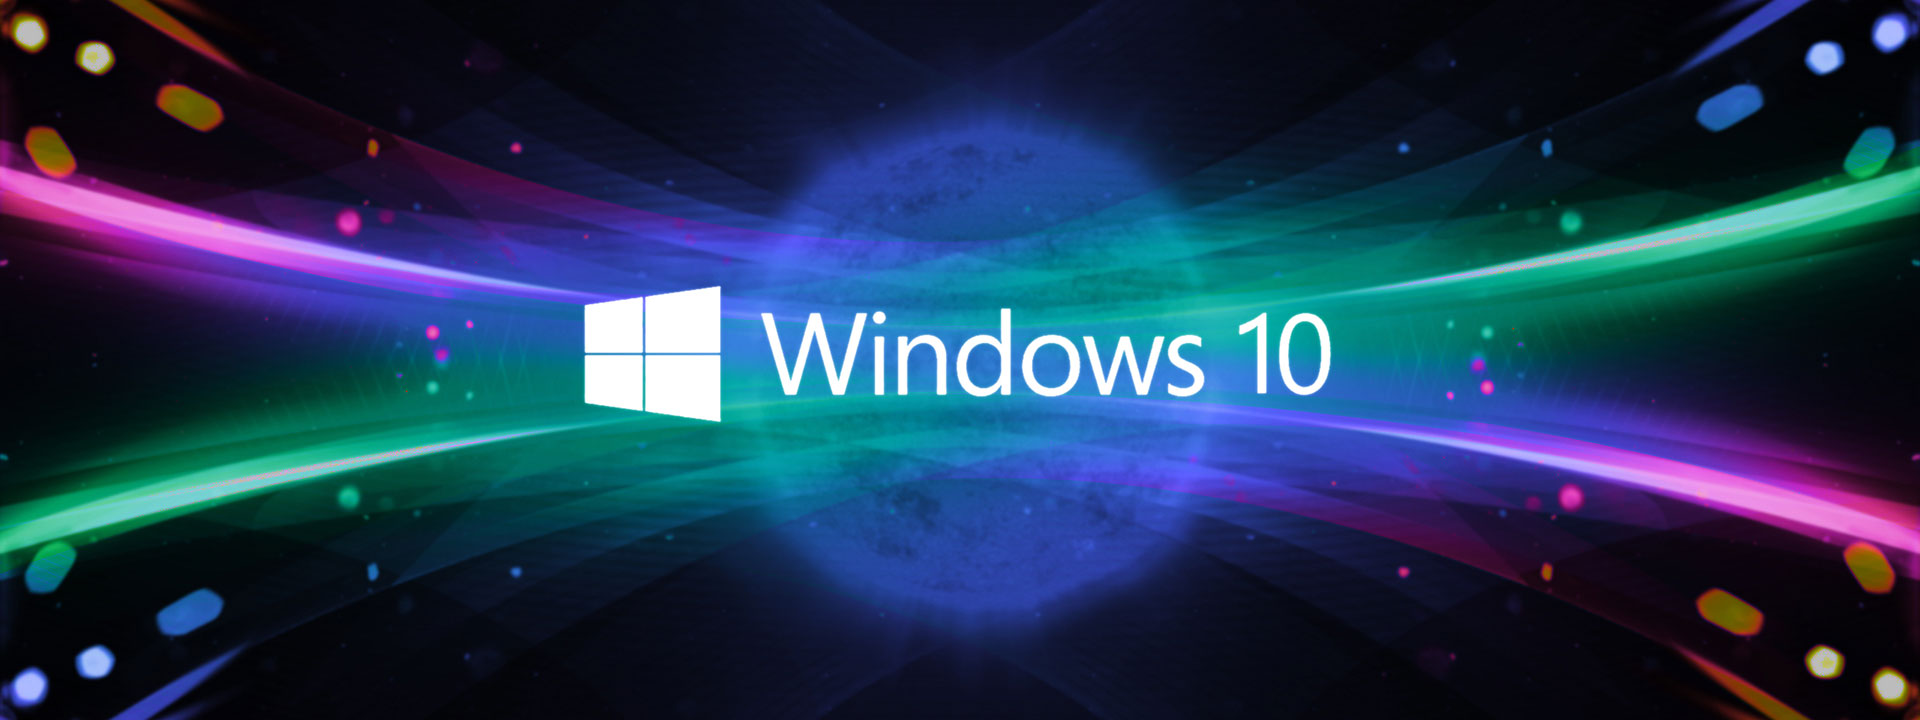 Cập nhật mới nhất của Windows 10 vào ngày 25 tháng 5 năm 2018 đang khiến cho cộng đồng người dùng đứng ngồi không yên bởi những tính năng và cải tiến đáng kinh ngạc. Cùng chúng tôi khám phá những tính năng mới trên Windows 10 để trải nghiệm một cách đầy đủ, nhanh chóng và tuyệt vời.